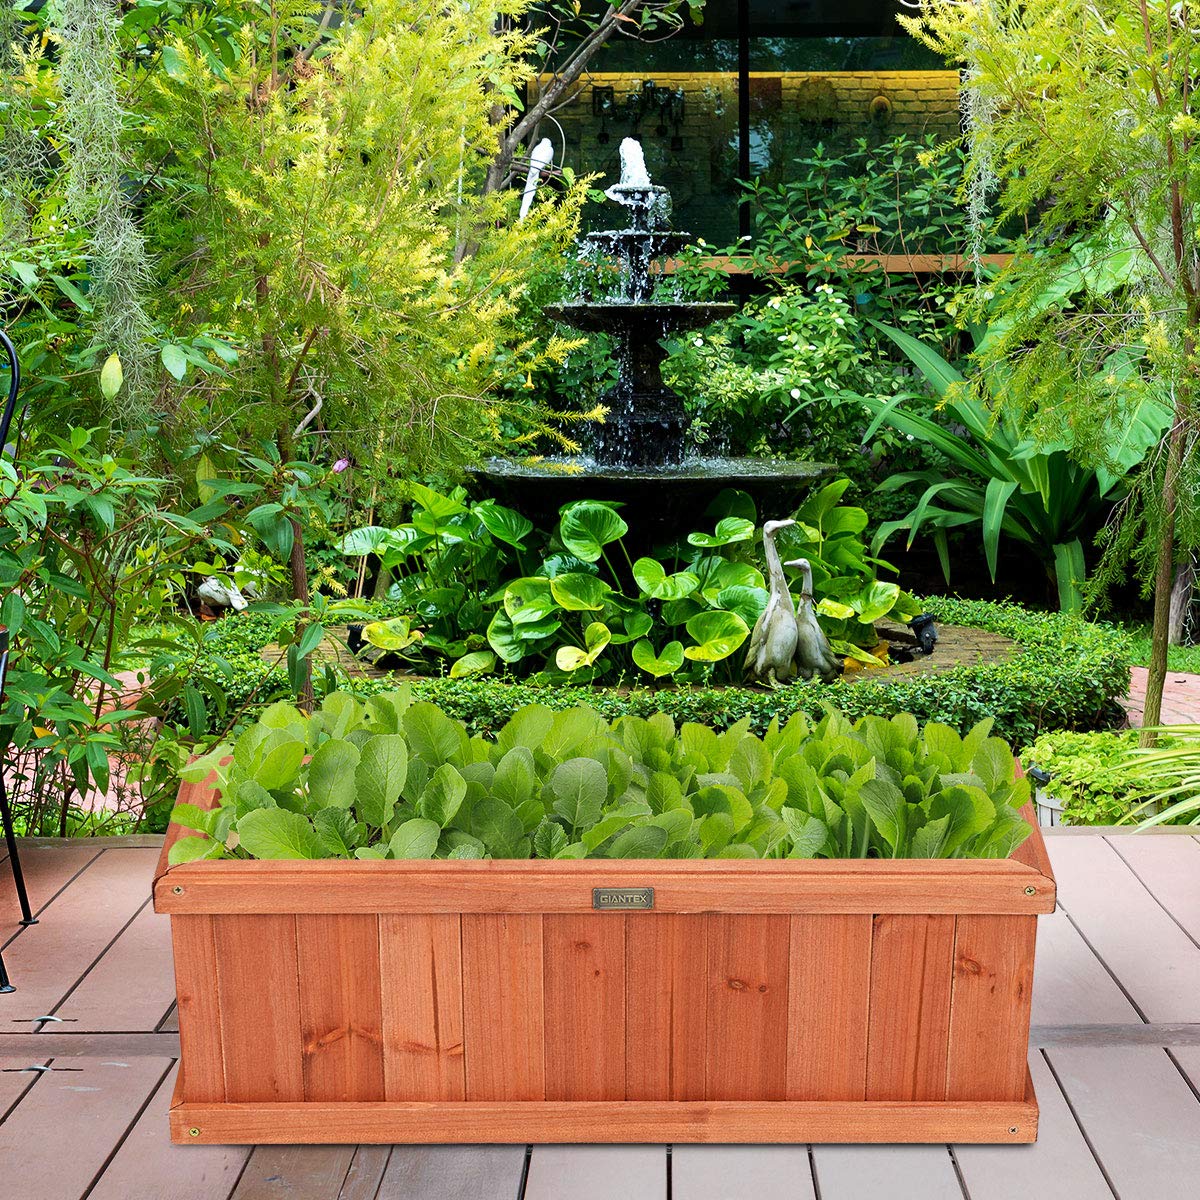 Giantex Raised Garden Bed, Flower Vegetable Herb Planter